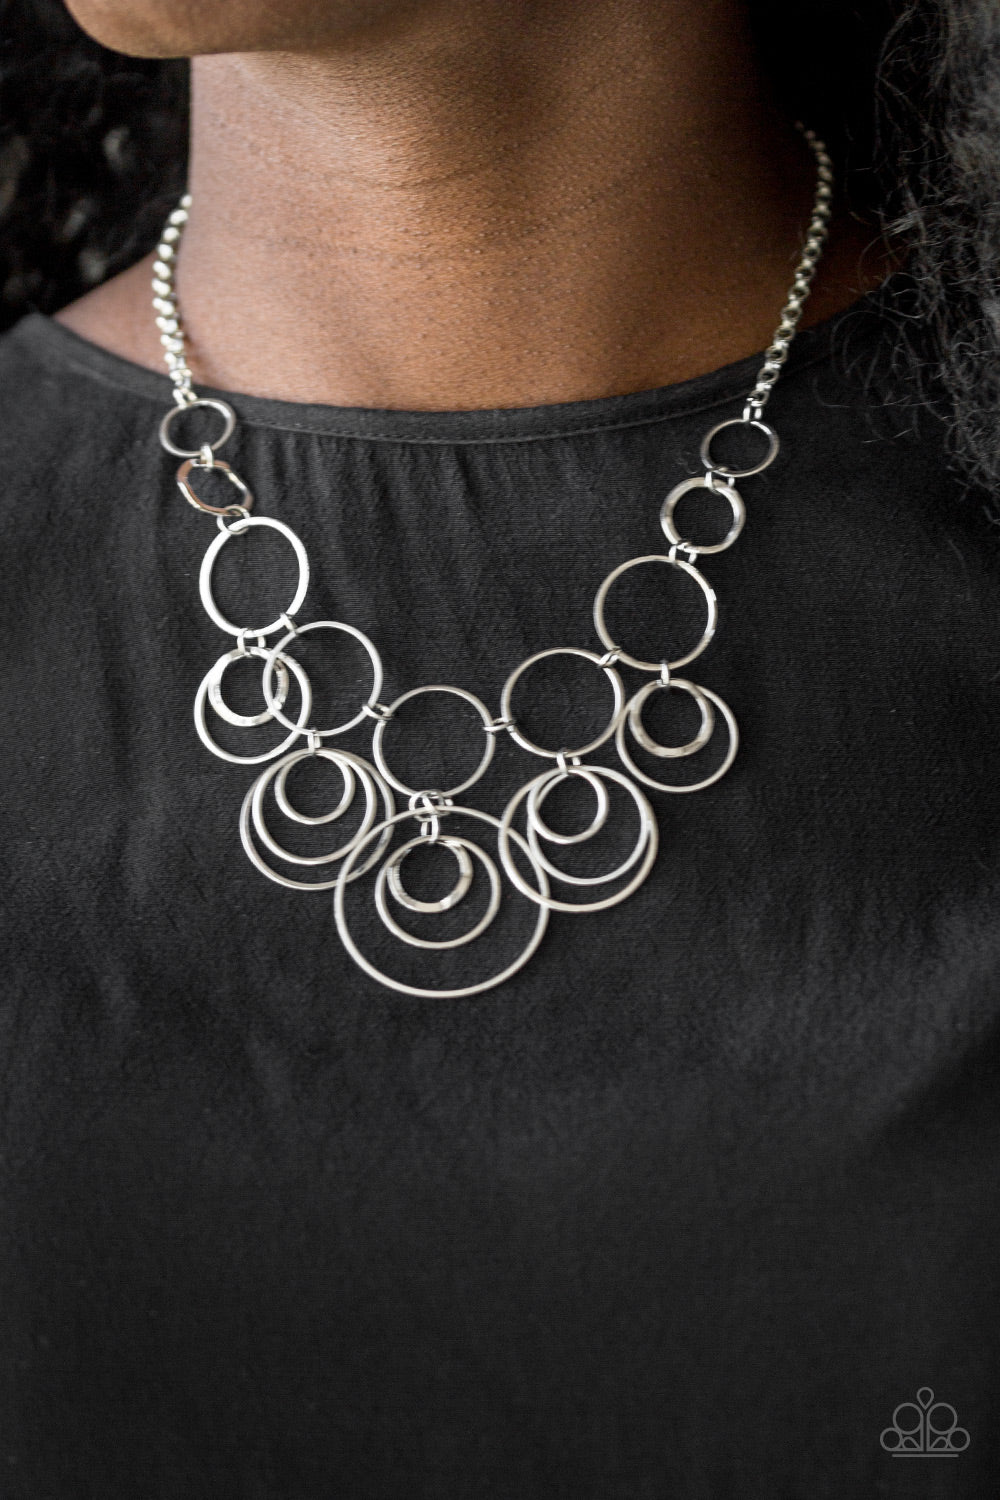 Break The Cycle Silver Necklace - Daria's Blings N Things